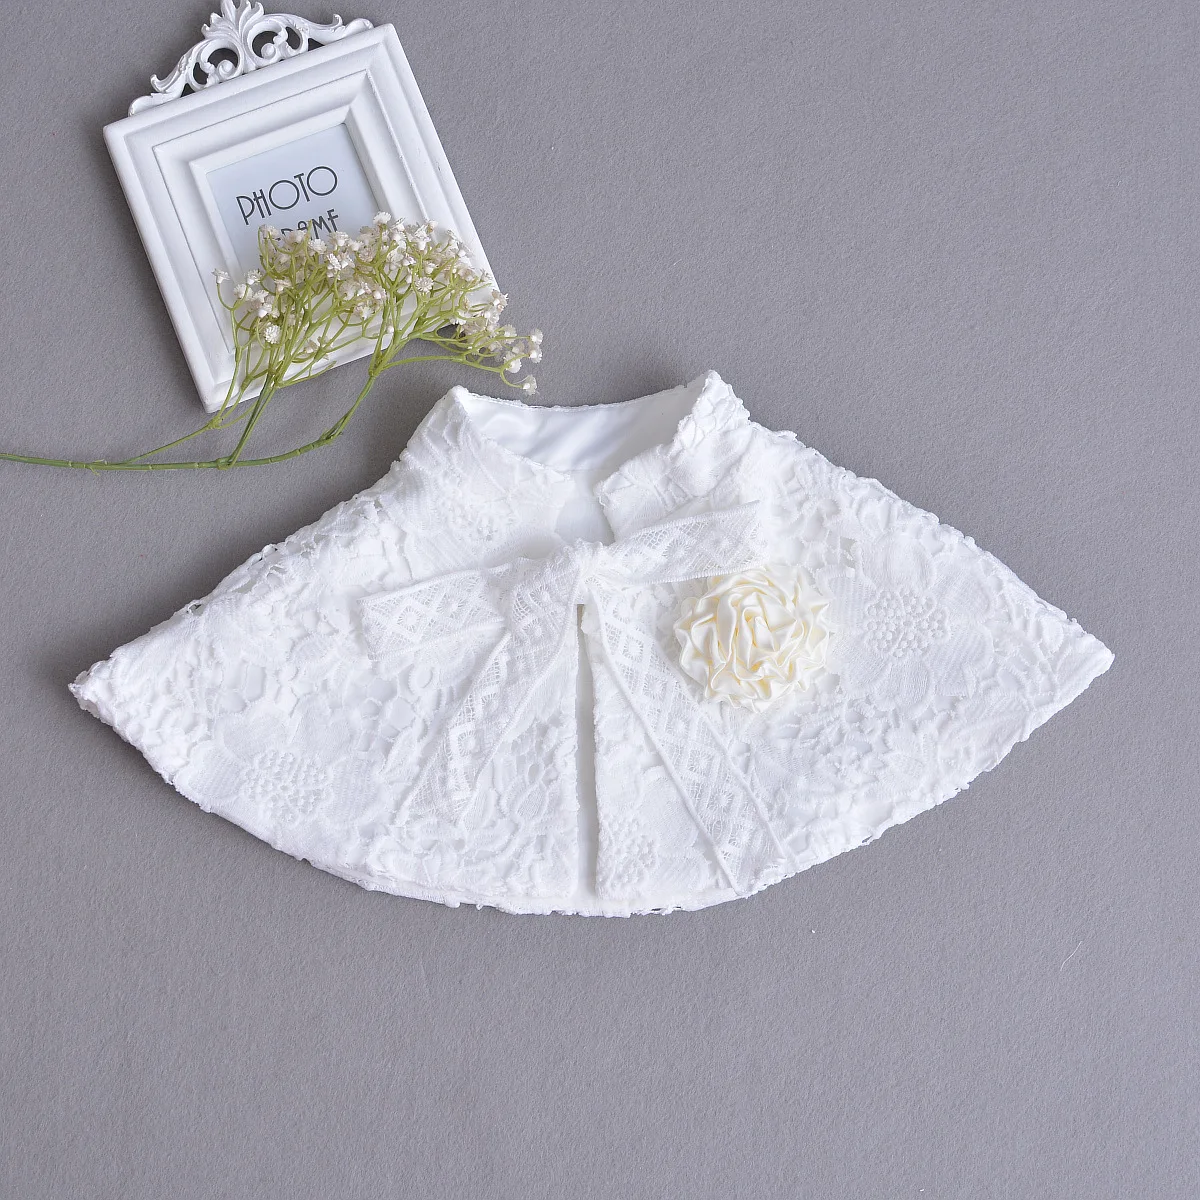 RL/ хлопковый кардиган для маленьких девочек, свитер для малышей 1 года, одежда для малышей весенний шаль, одежда для девочек, ABC165002 - Цвет: 185001